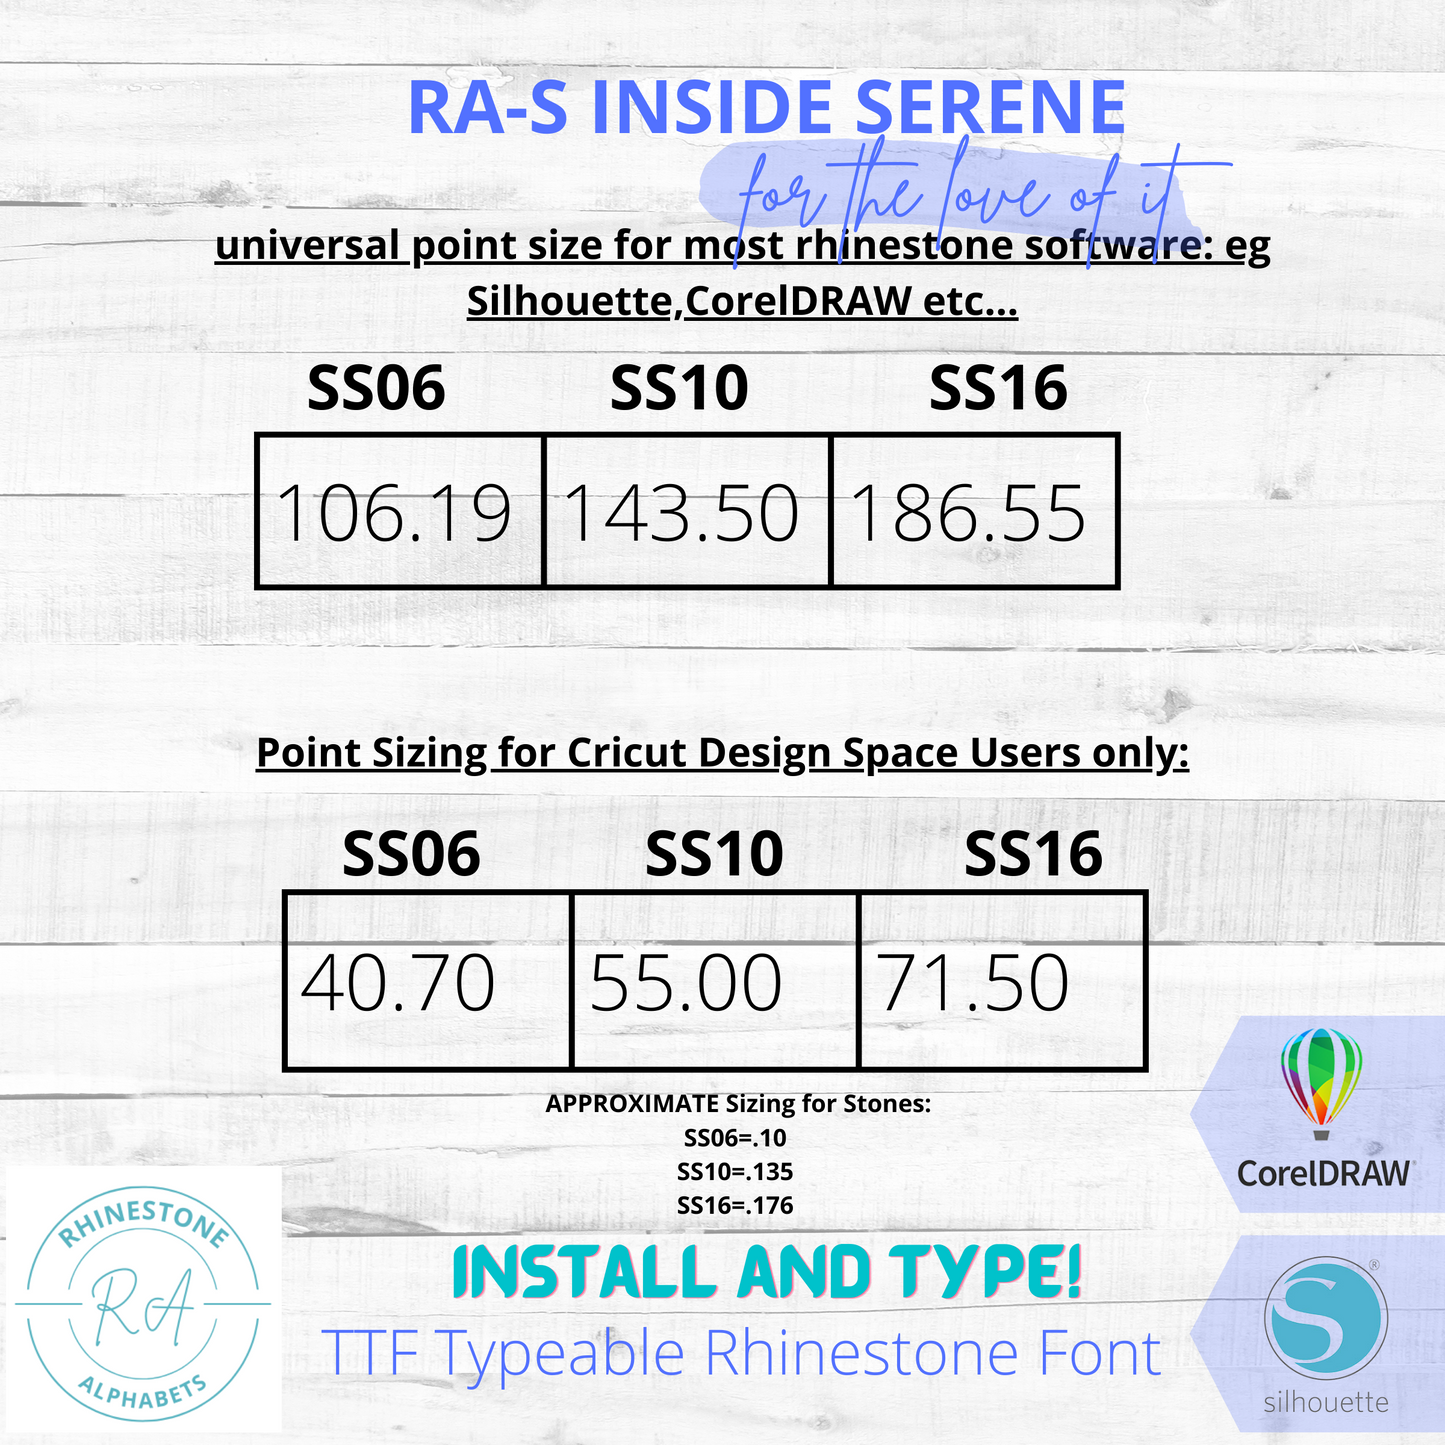 RA-S Inside Serene